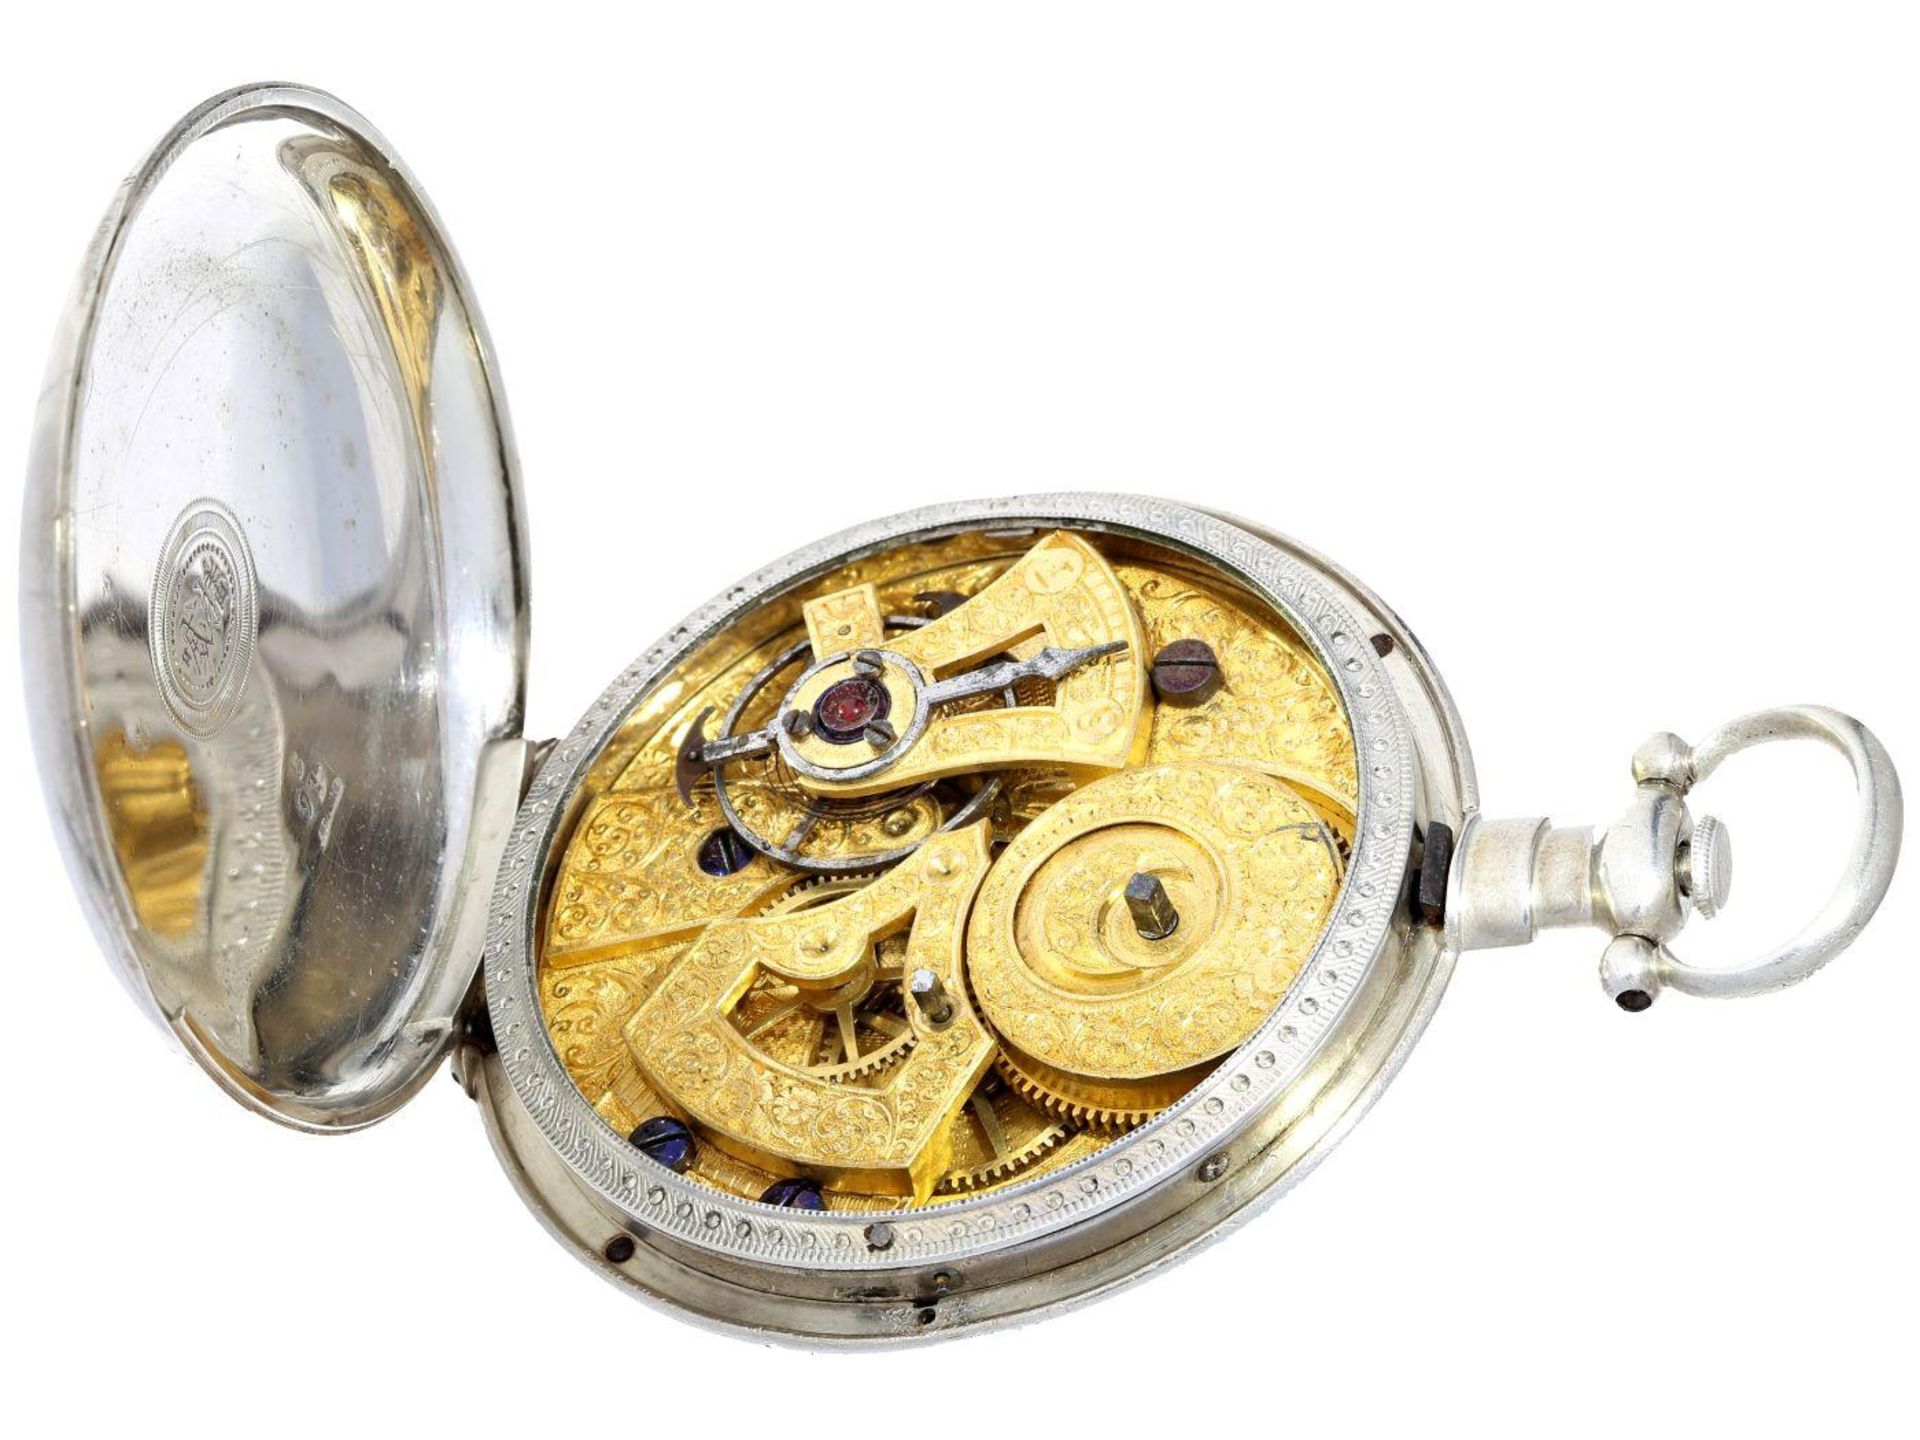 Taschenuhr: besonders große Taschenuhr für den chinesischen Markt mit Zentralsekunde, Fleurier um - Image 3 of 3